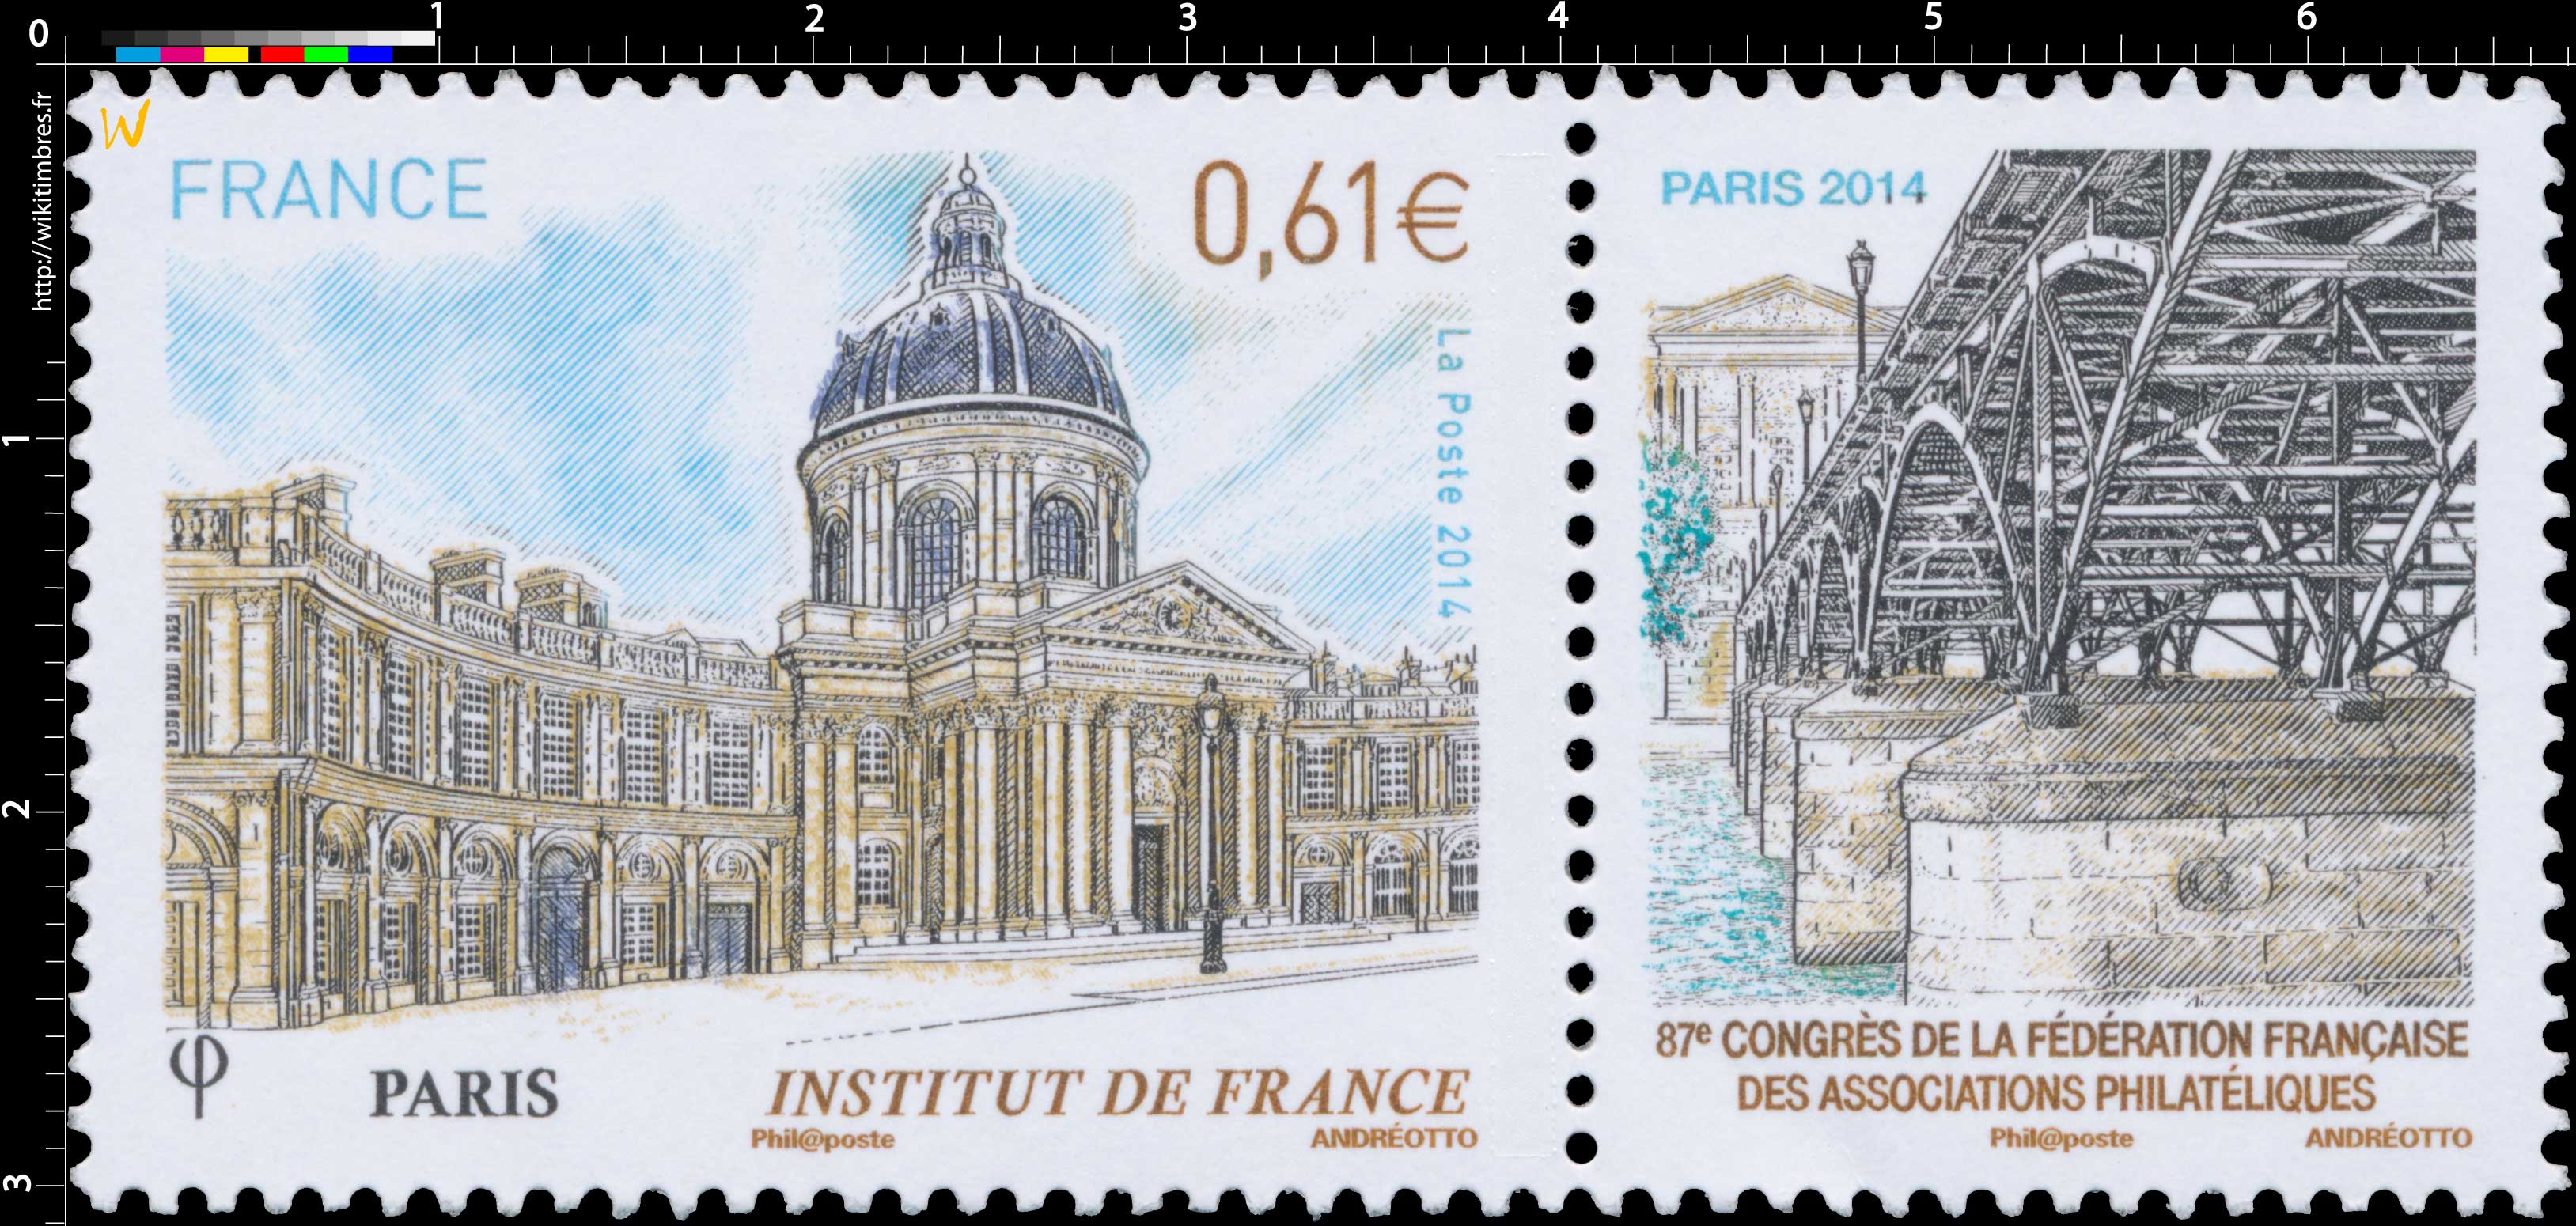 2014 Institut de France - Paris - 87e congrès de la Fédération française des associations philatéliques